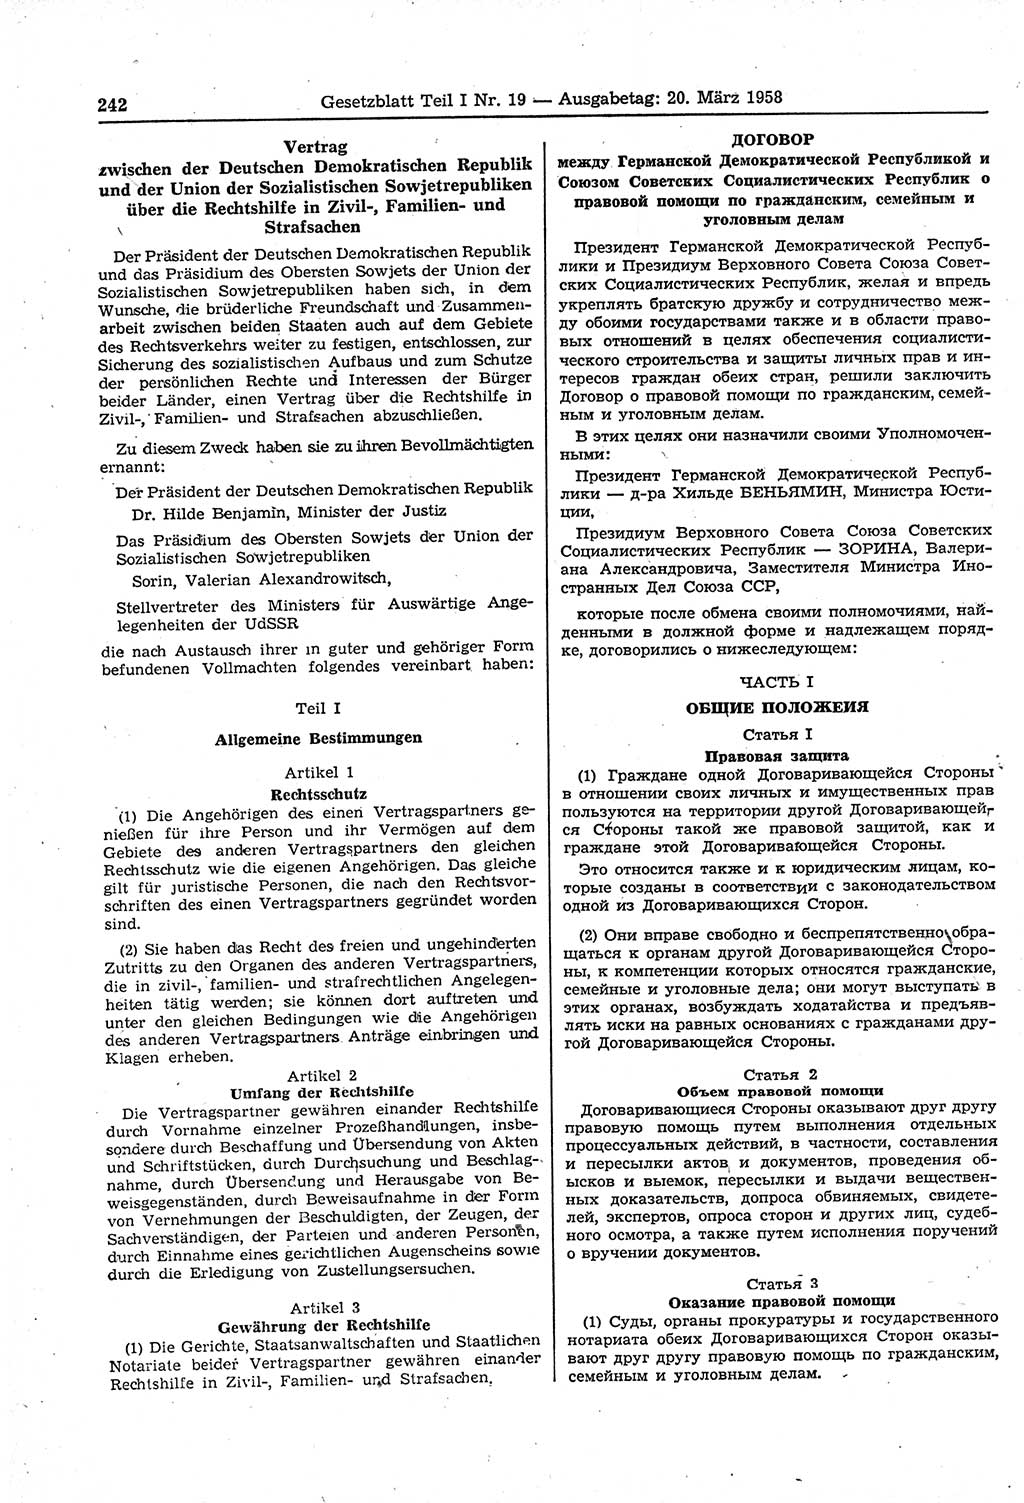 Gesetzblatt (GBl.) der Deutschen Demokratischen Republik (DDR) Teil Ⅰ 1958, Seite 242 (GBl. DDR Ⅰ 1958, S. 242)